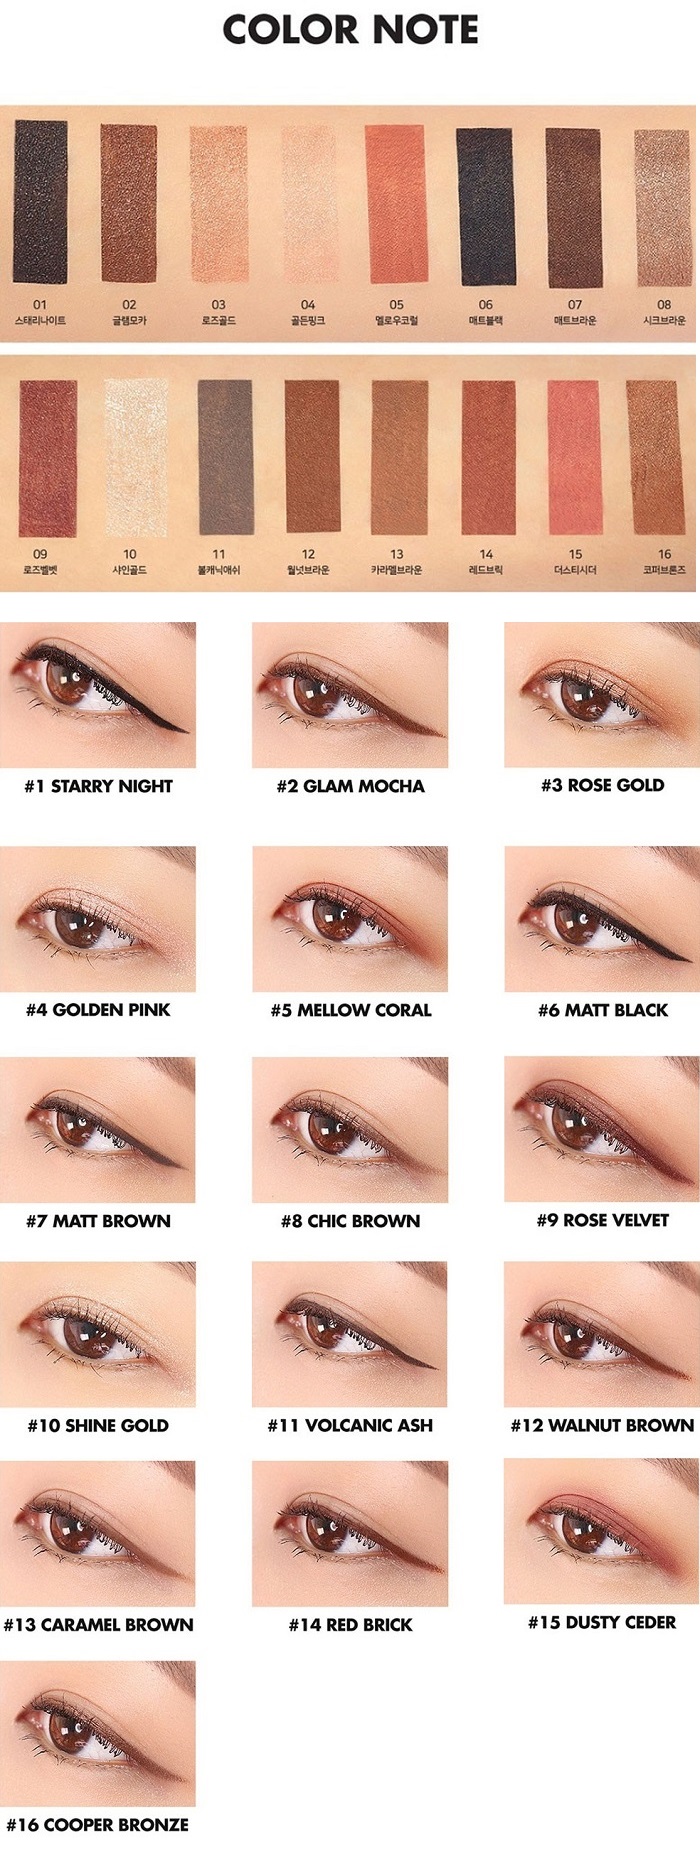 LILYBYRED Starry Eyes 9 To 9 Gel Eyeliner Glam Mocha 02 0.5g 1